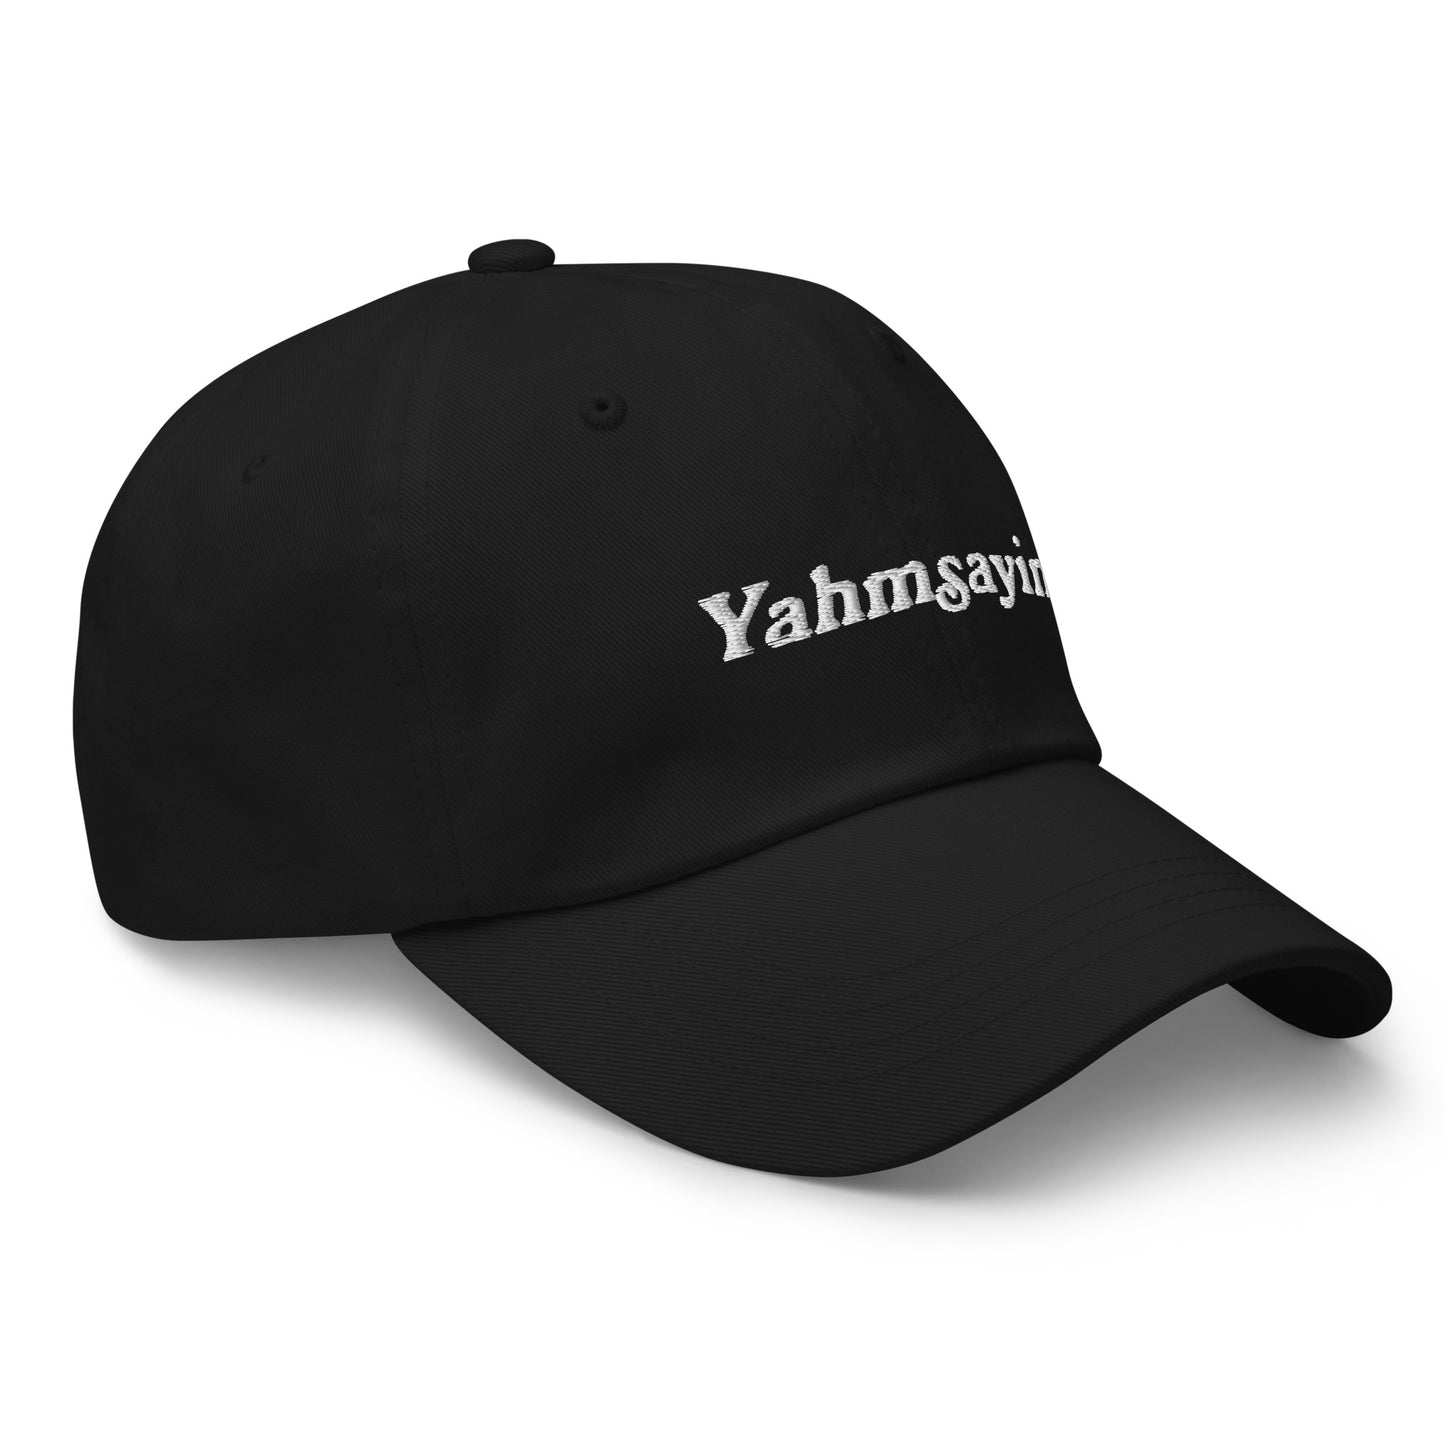 Yahmsayin Dad Hat